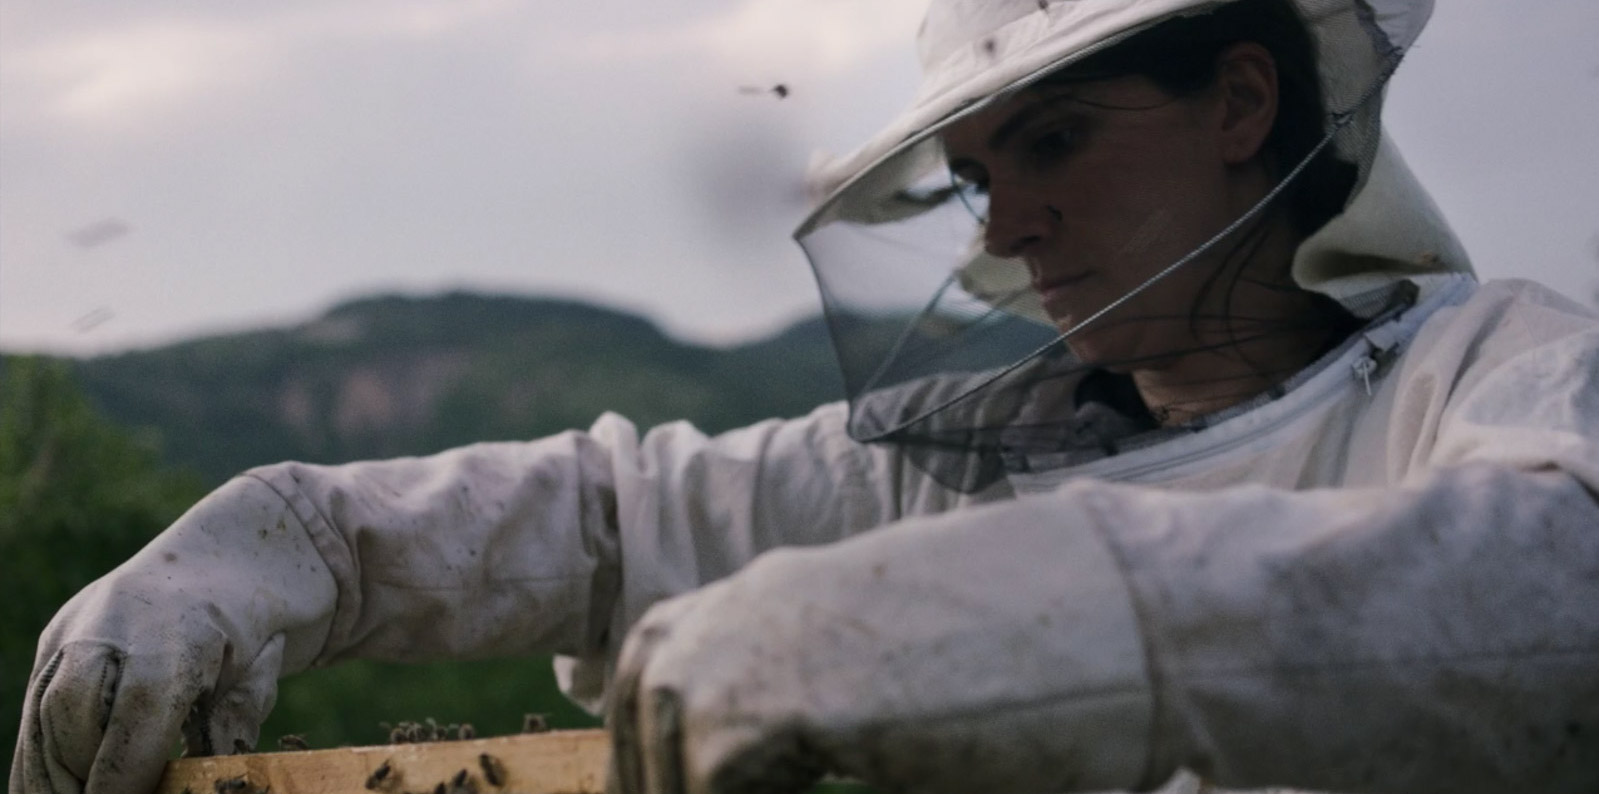 Cena do filme Colmeia. Na imagem, vemos a protagonista Fahrije, uma mulher branca, aparentando cerca de 40 anos, vestindo um traje de apicultura branco e manipulando um dos instrumentos da apicultura, com as abelhas ao redor dela.